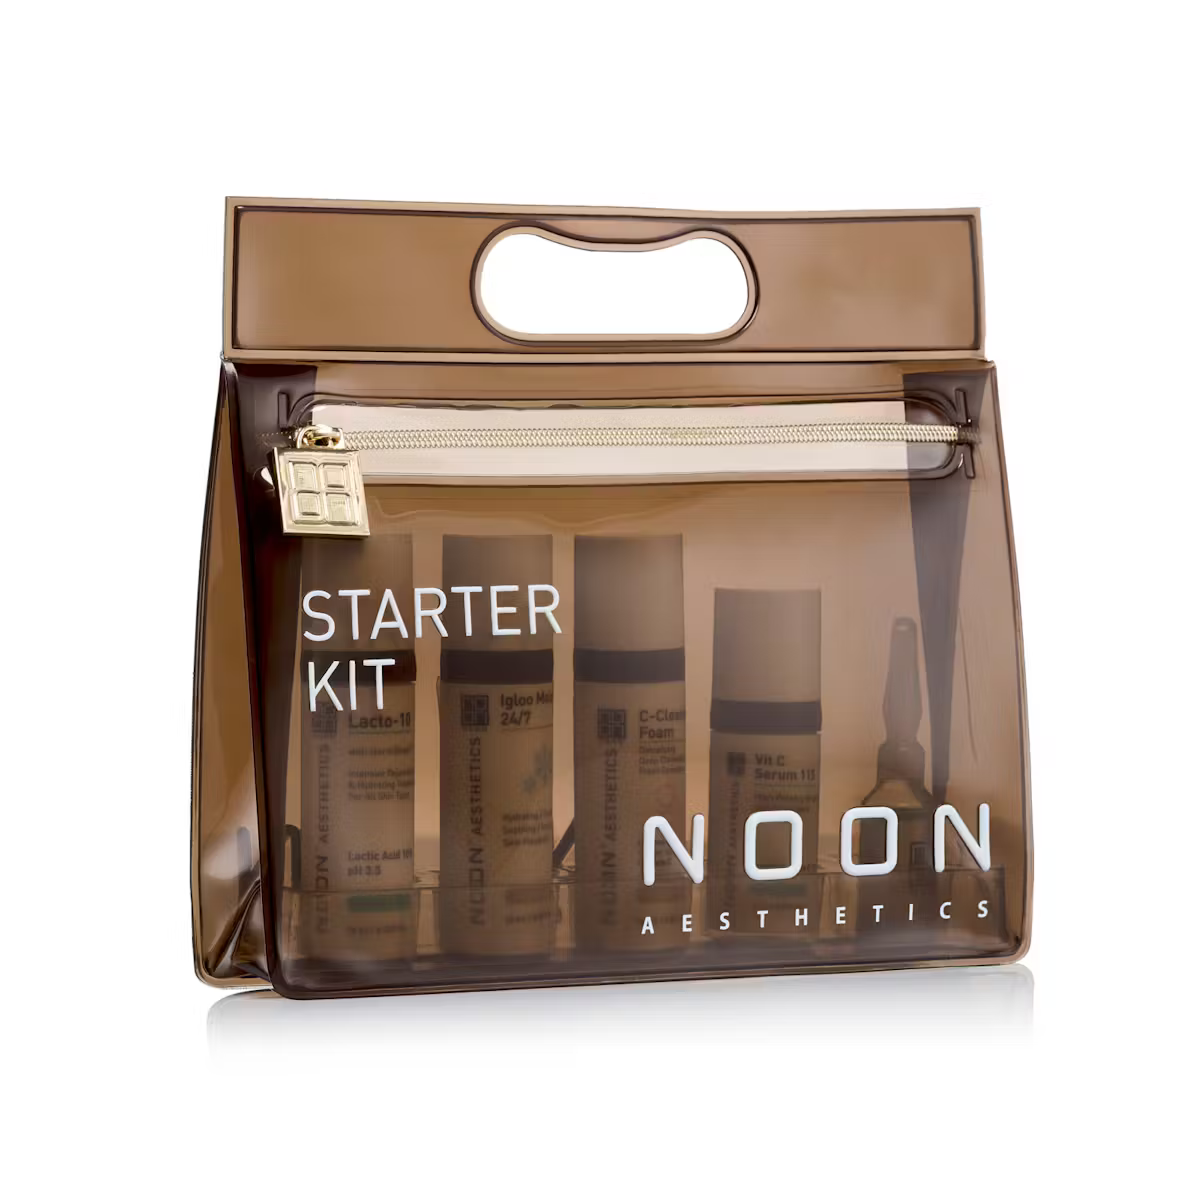 NOON Aesthetics Starter Kit Experience